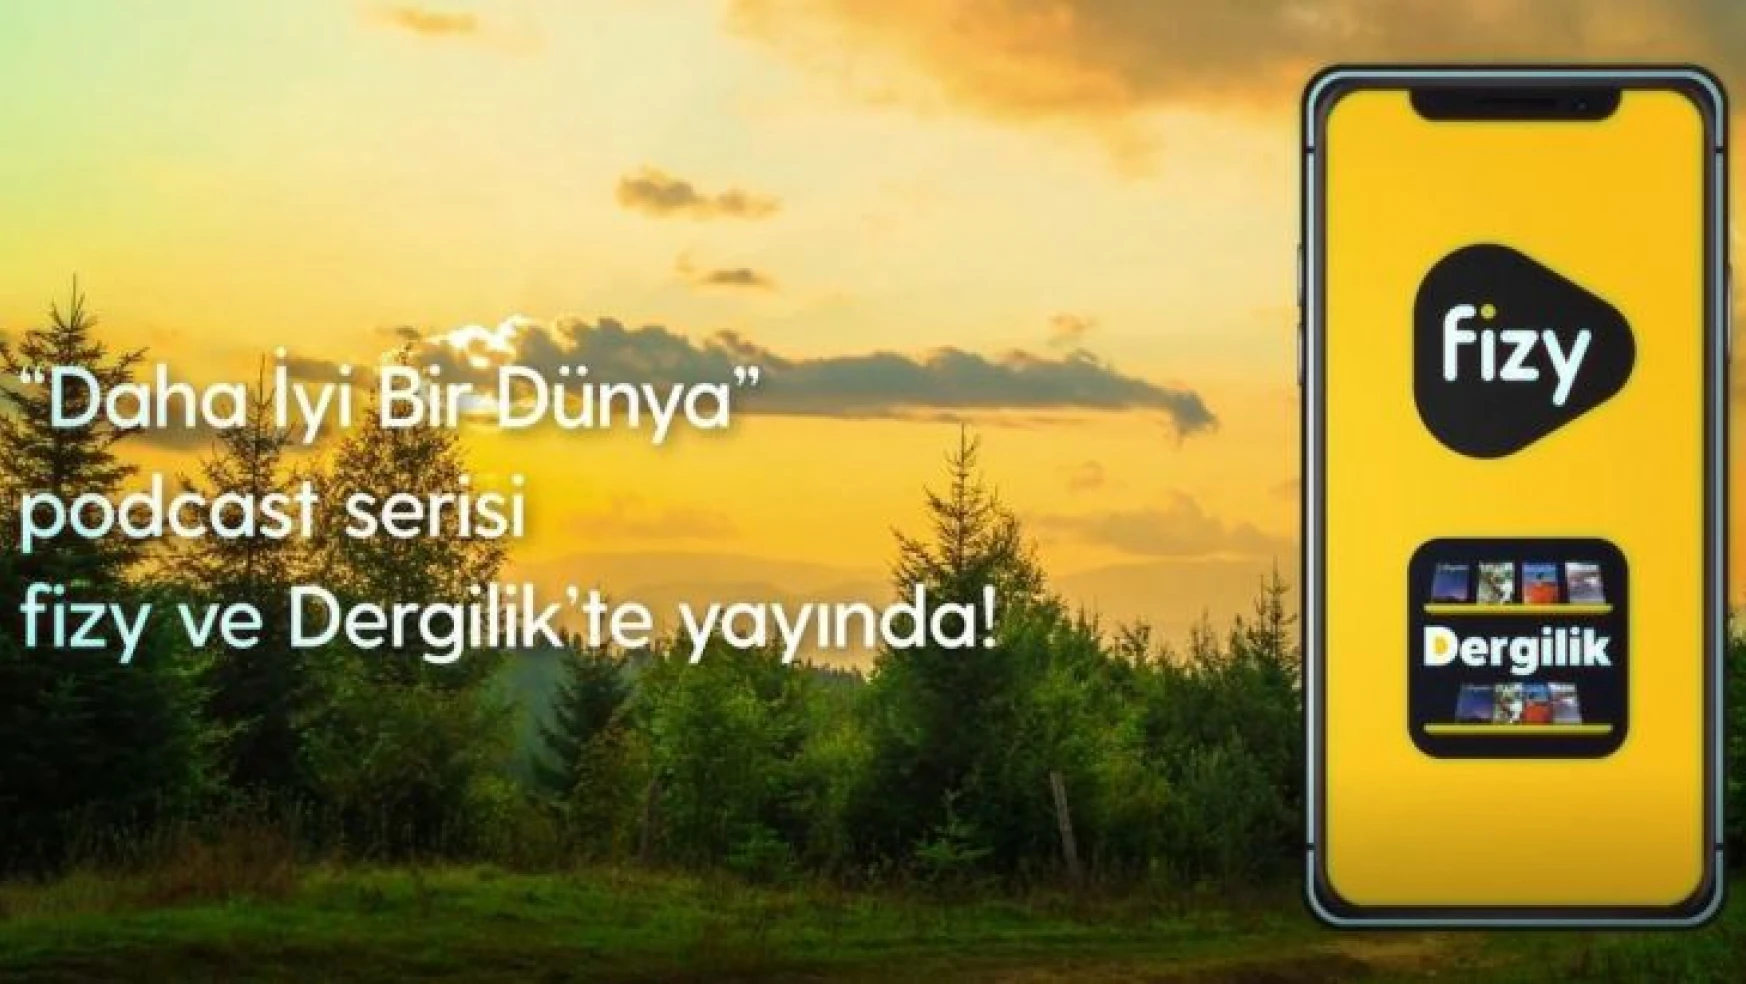 Turkcell 'Daha İyi Bir Dünya' dedi, alanında yetkin isimler projeyi destekledi